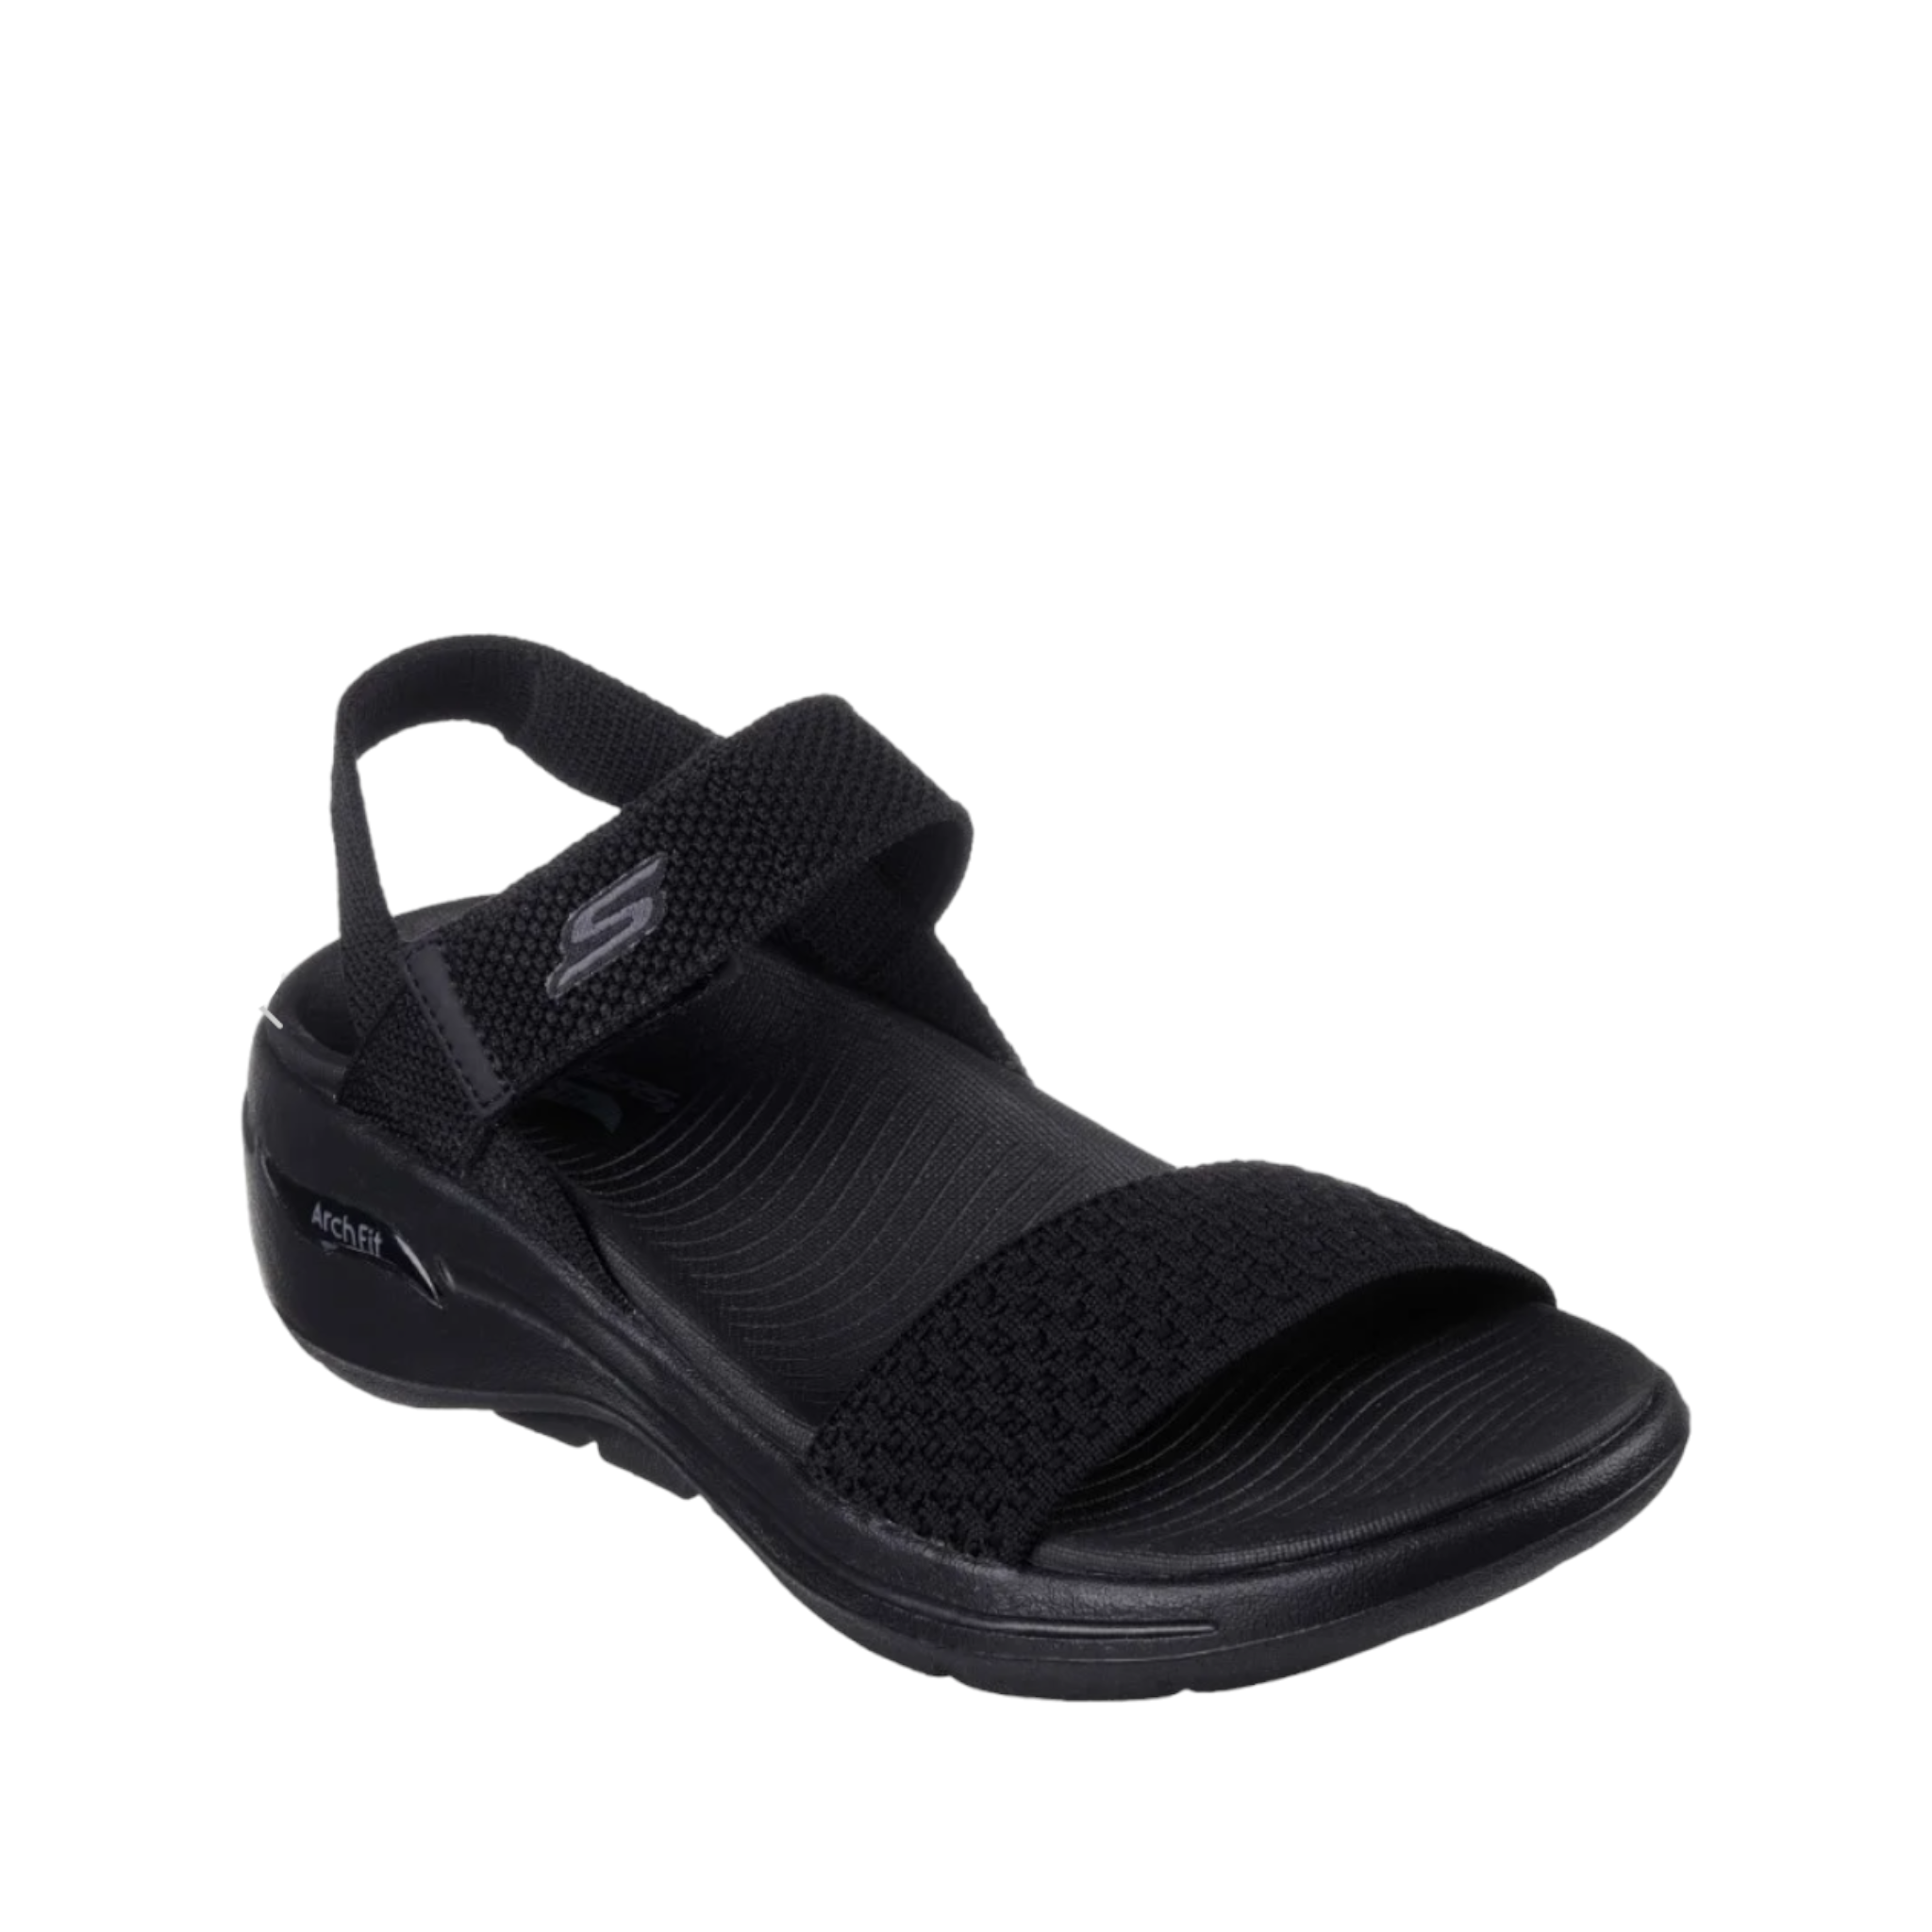 Polished - shoe&amp;me - Skechers - Sandal - Sandals, Summer, Womens